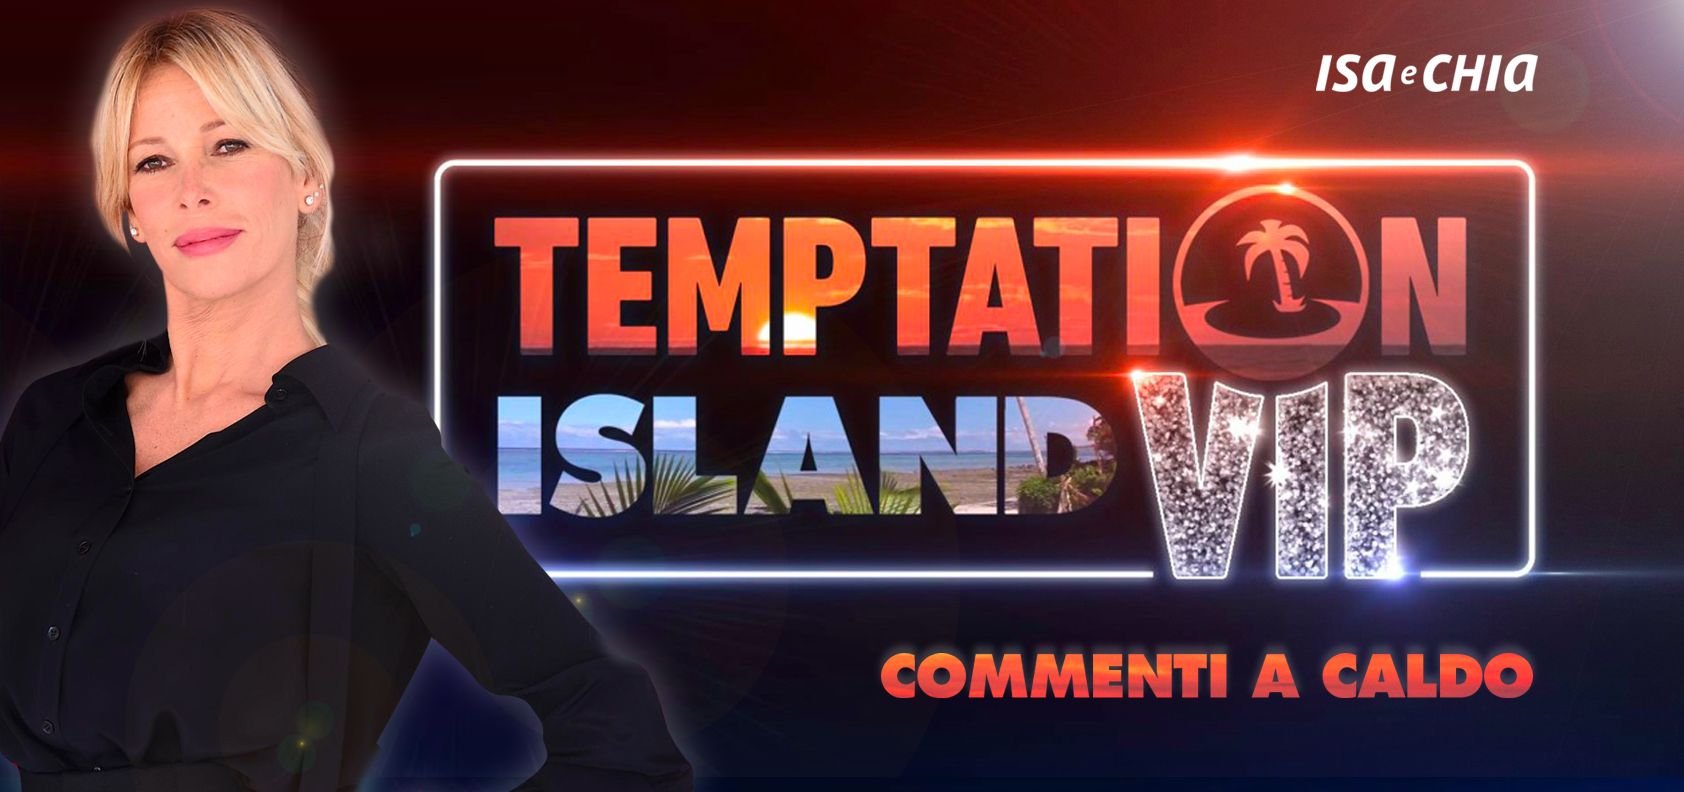 ‘Temptation Island Vip 2’, puntata speciale: commenti a caldo